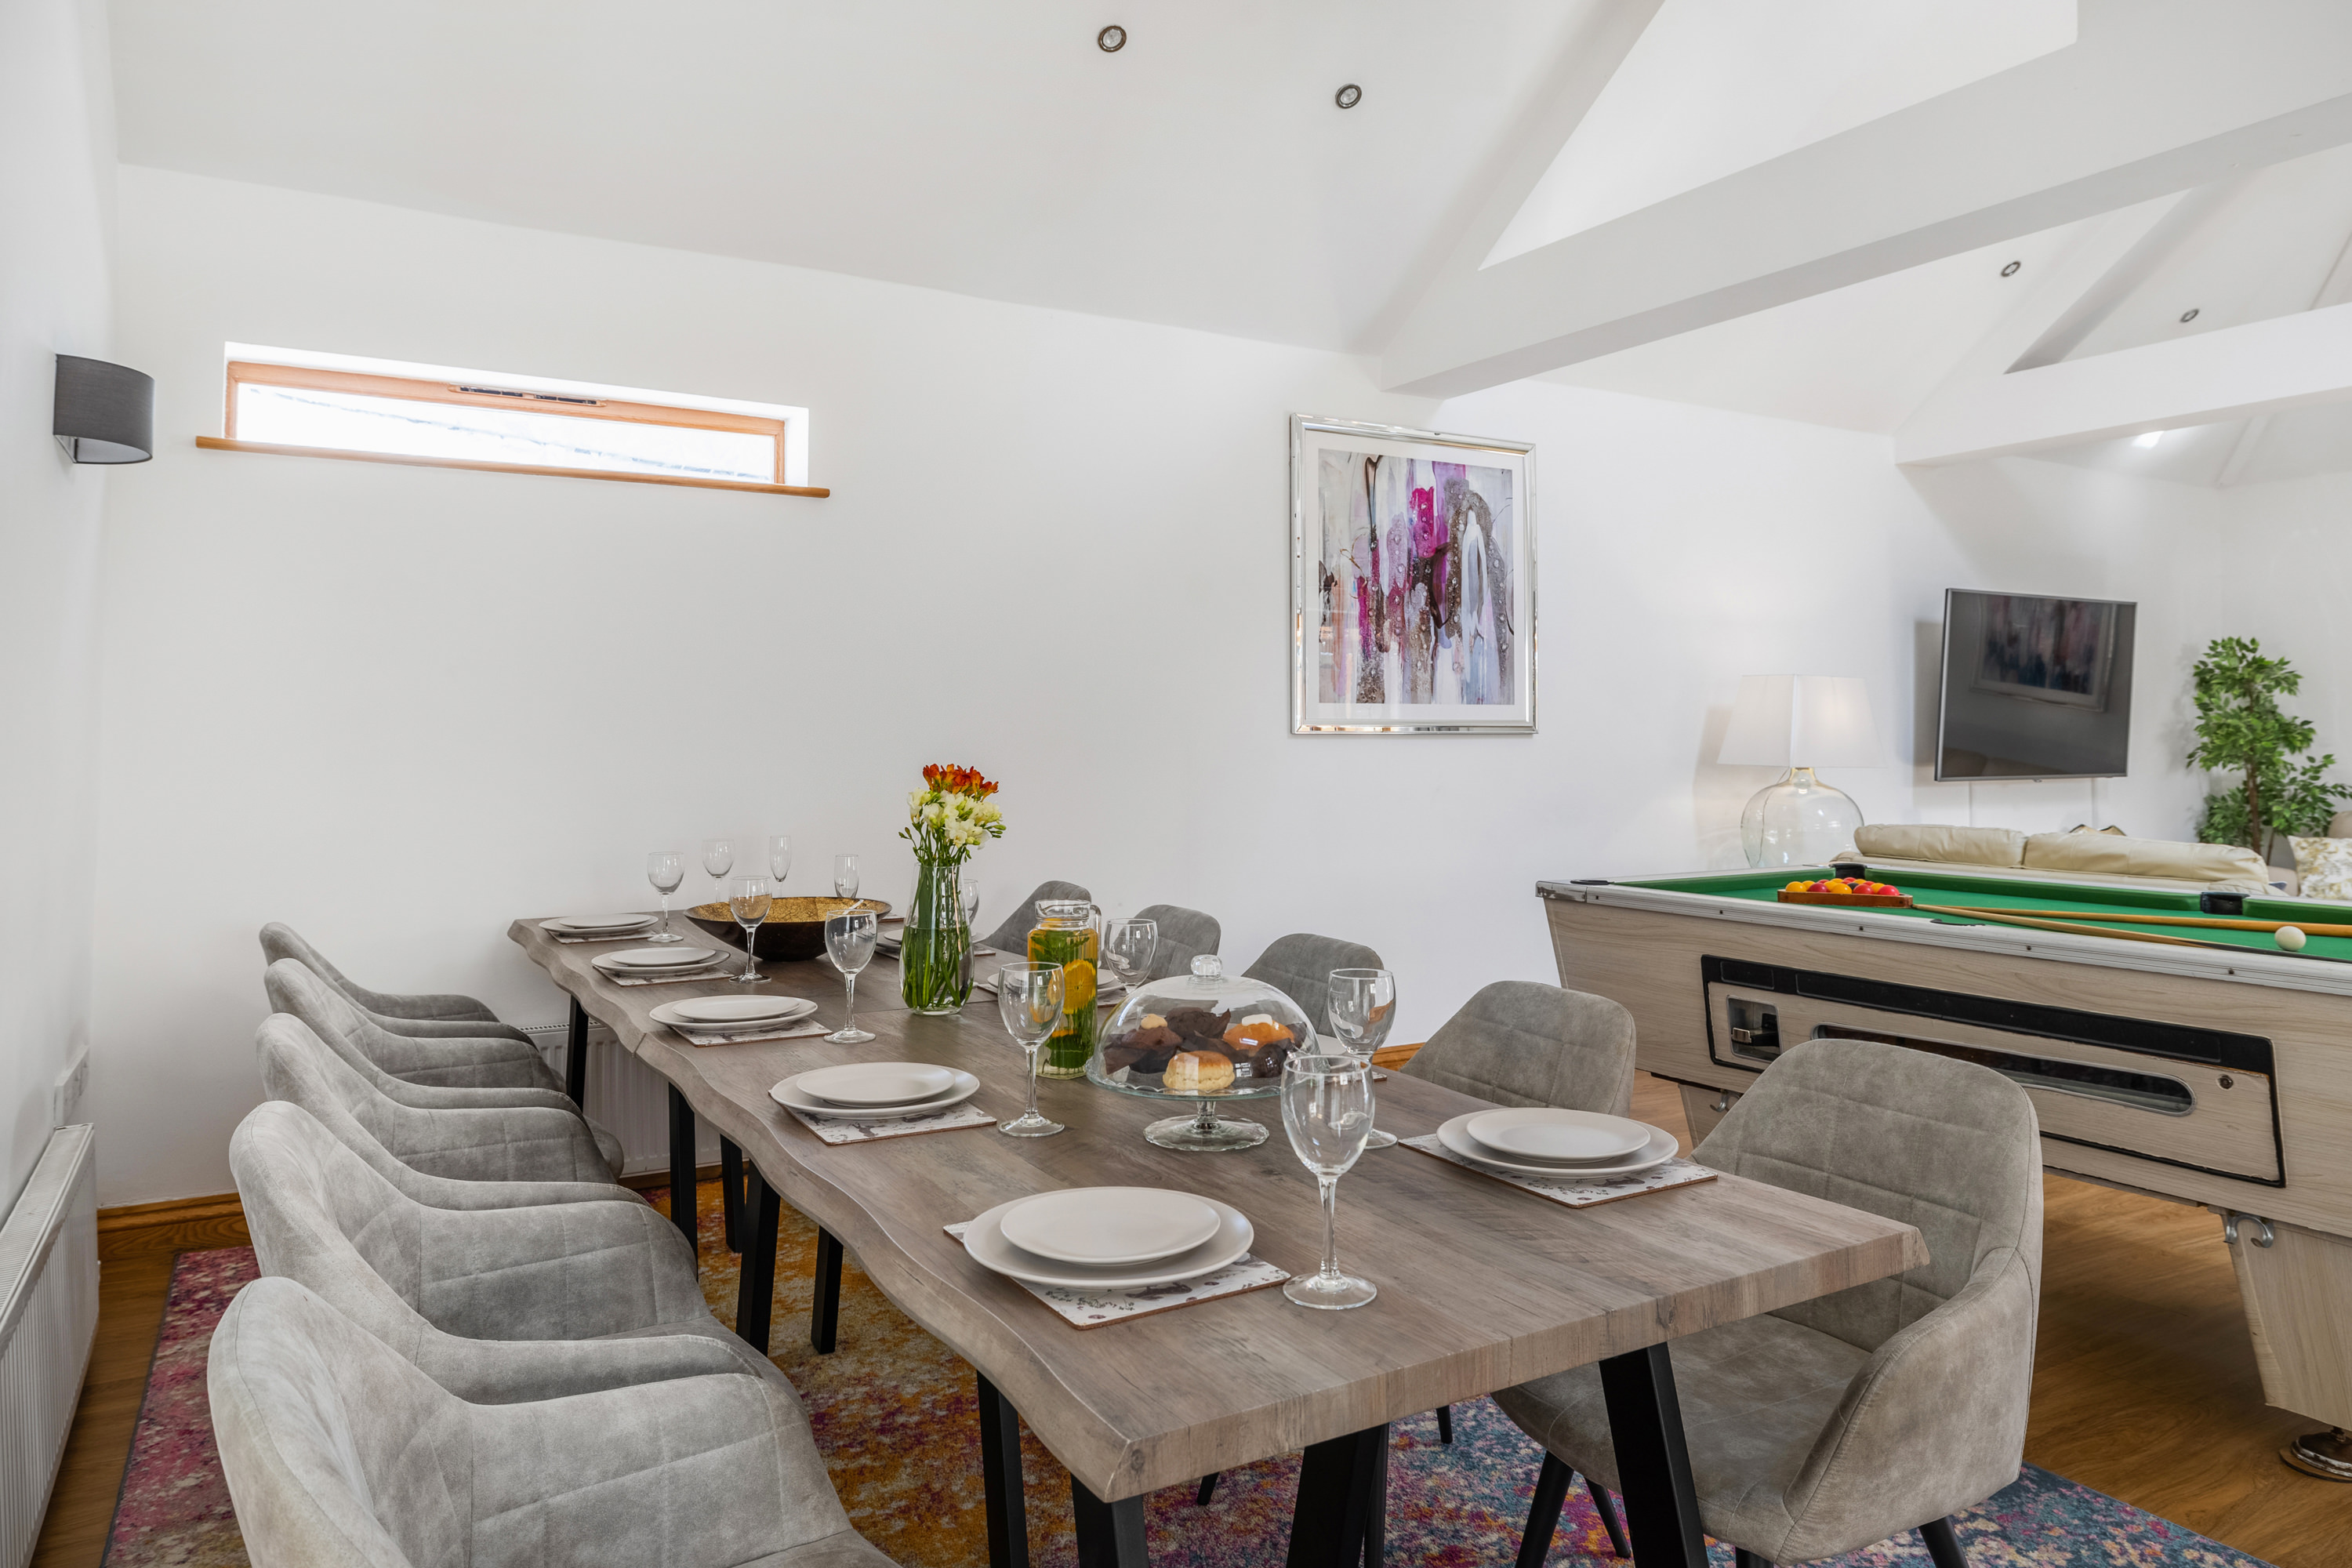 Kingswood Devon - inside dining for 10 guests